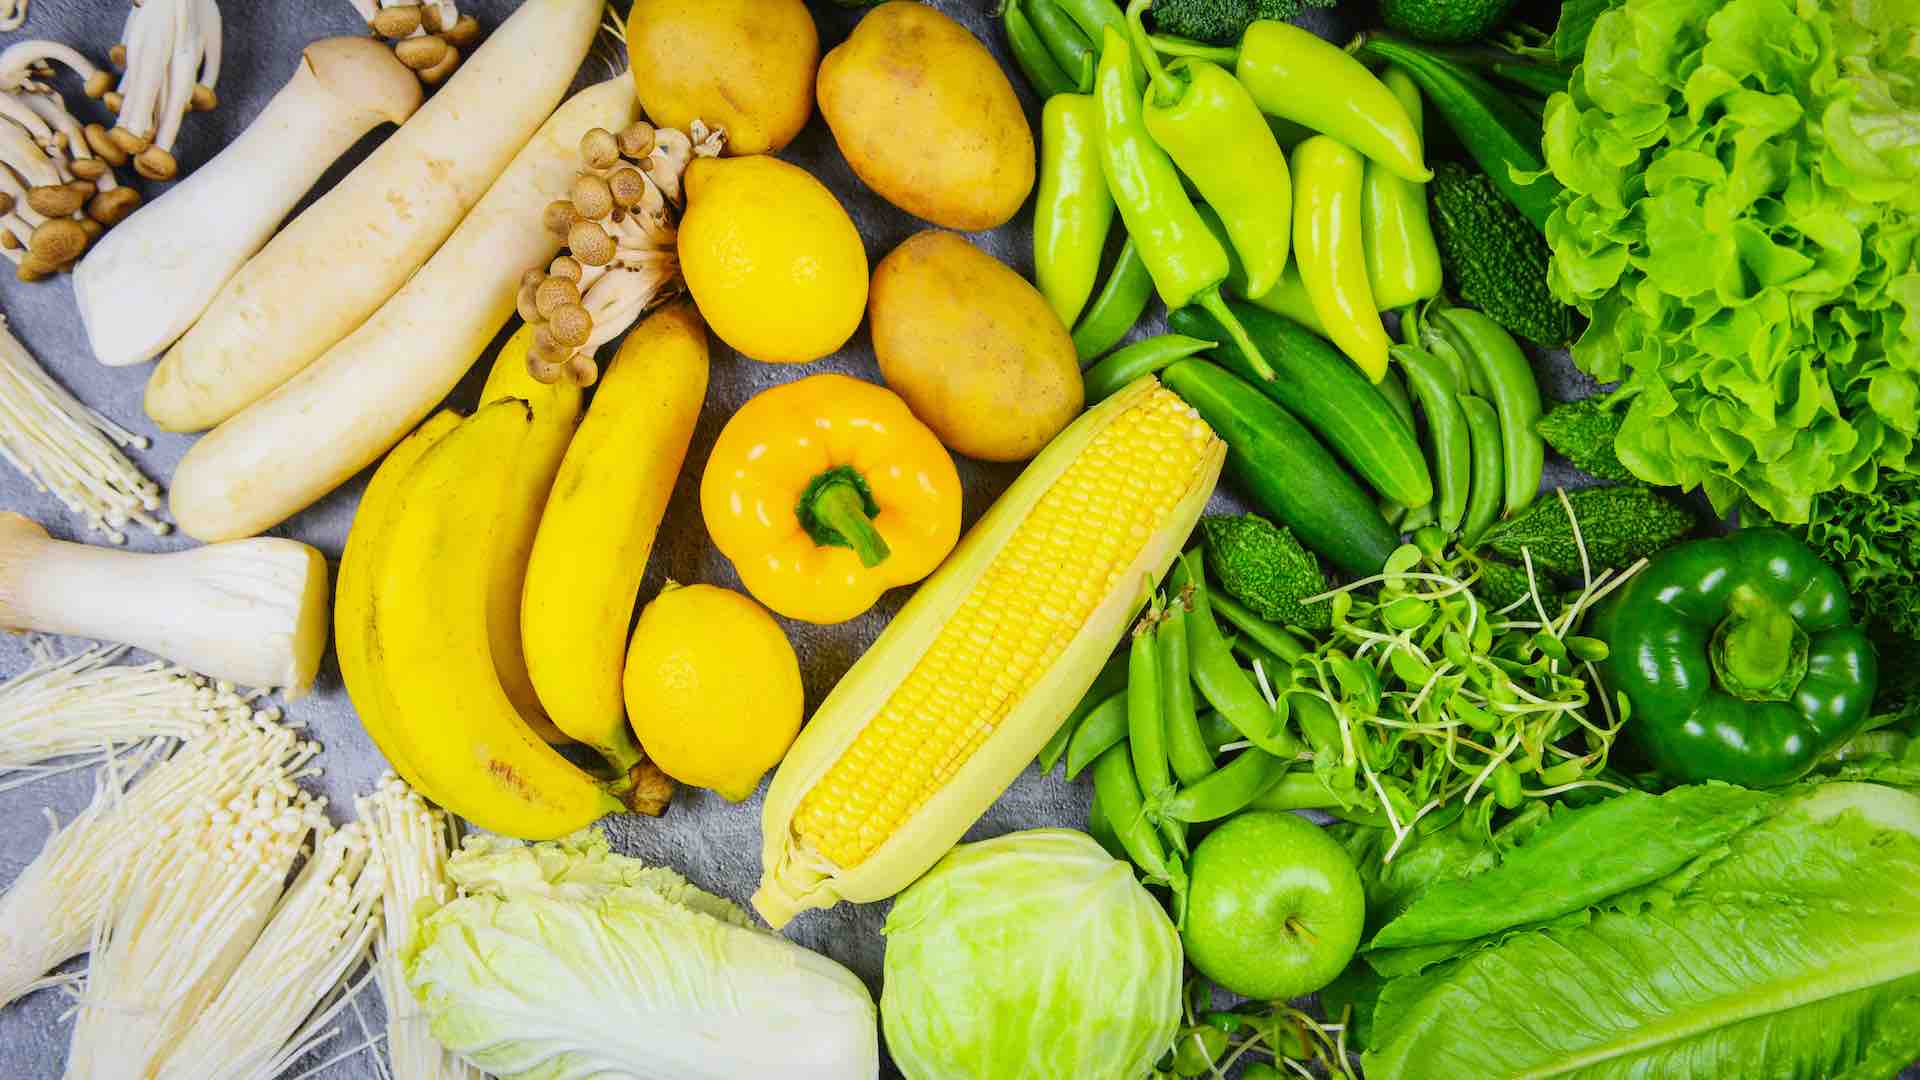 最近的荟萃分析强调了过量盐摄入对健康的不利影响，尤其是对老年人群。萨顿博士强调了监测钠摄入量的重要性，以减轻健康风险并提高晚年生活质量。萨顿博士建议多吃富含钾的食物，如绿叶蔬菜、香蕉和红薯，同时减少加工食品的摄入，并重申了均衡饮食选择对控制血压和整体心血管健康的重要性